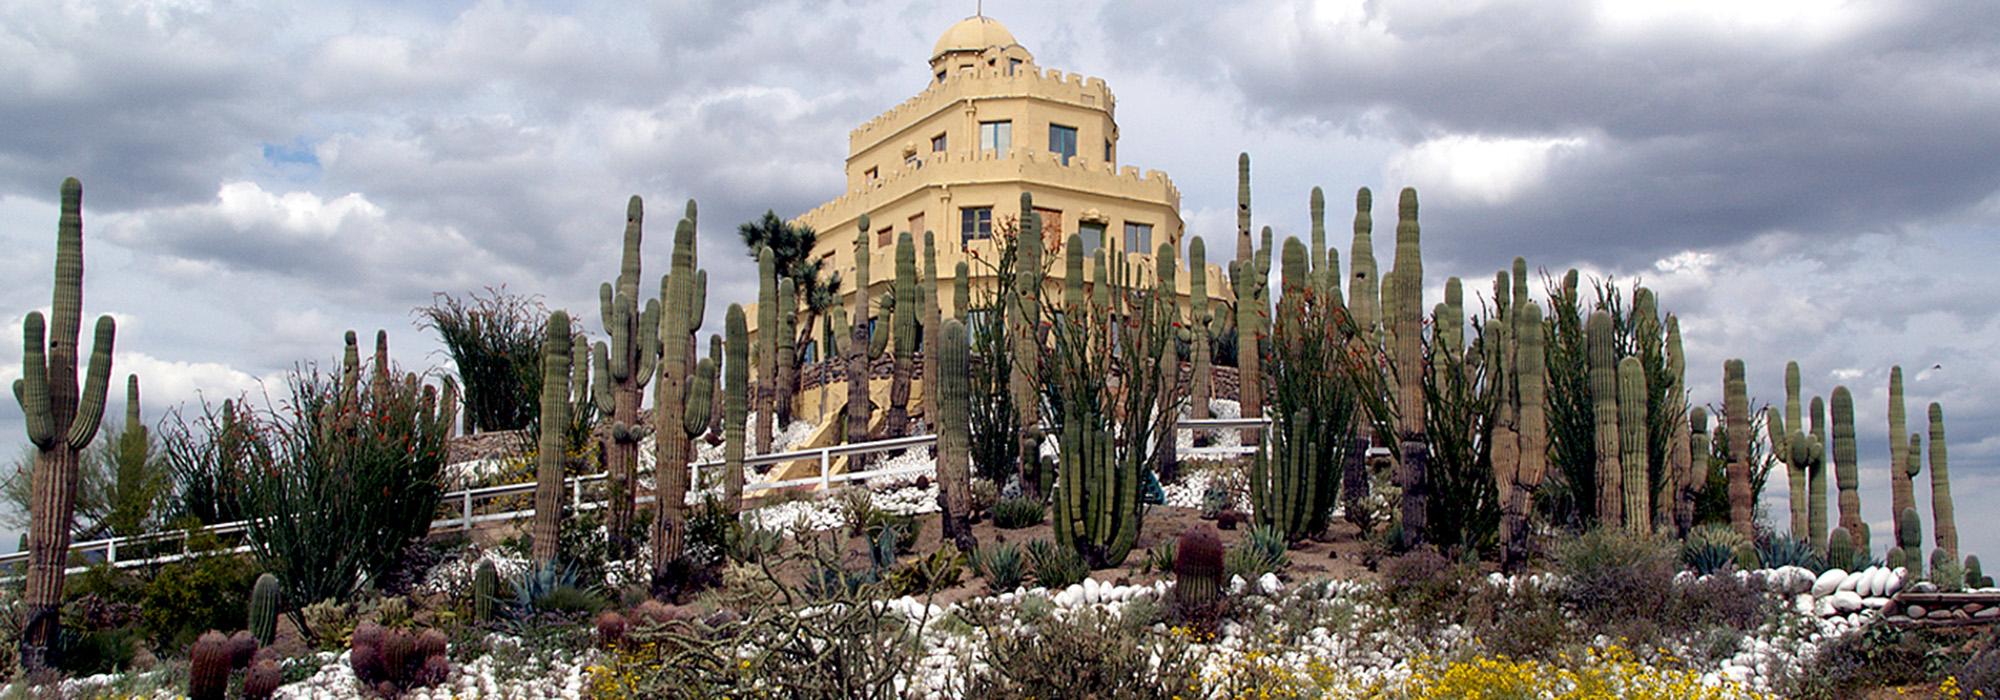 Tovrea Castle and Carraro Cactus Garden